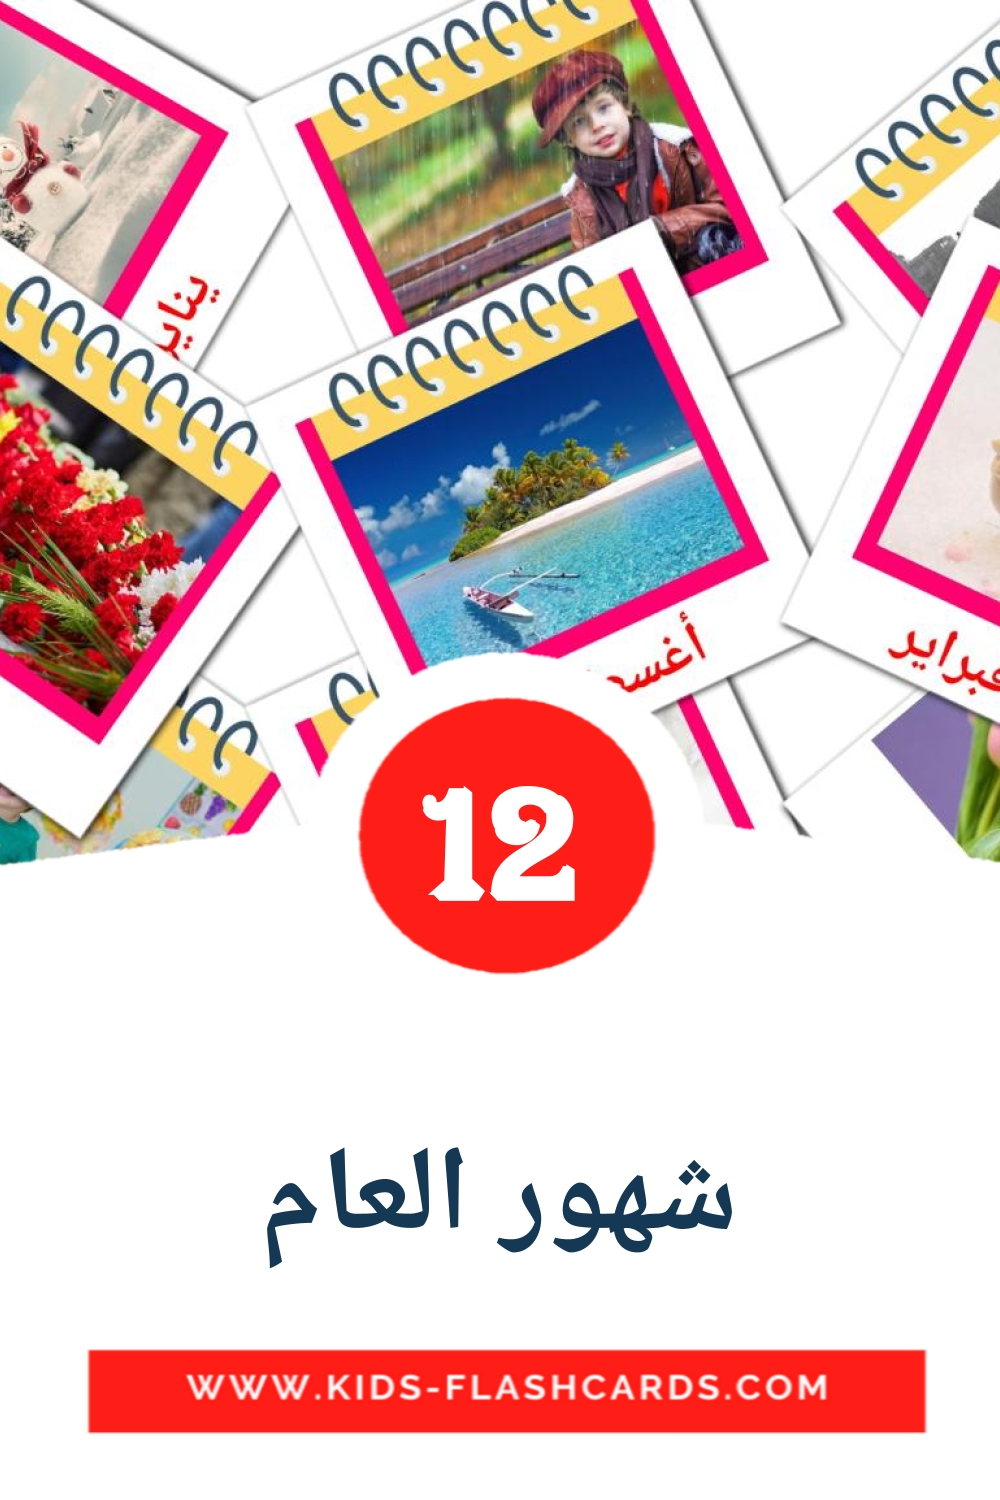 12 tarjetas didacticas de شهور العام para el jardín de infancia en árabe